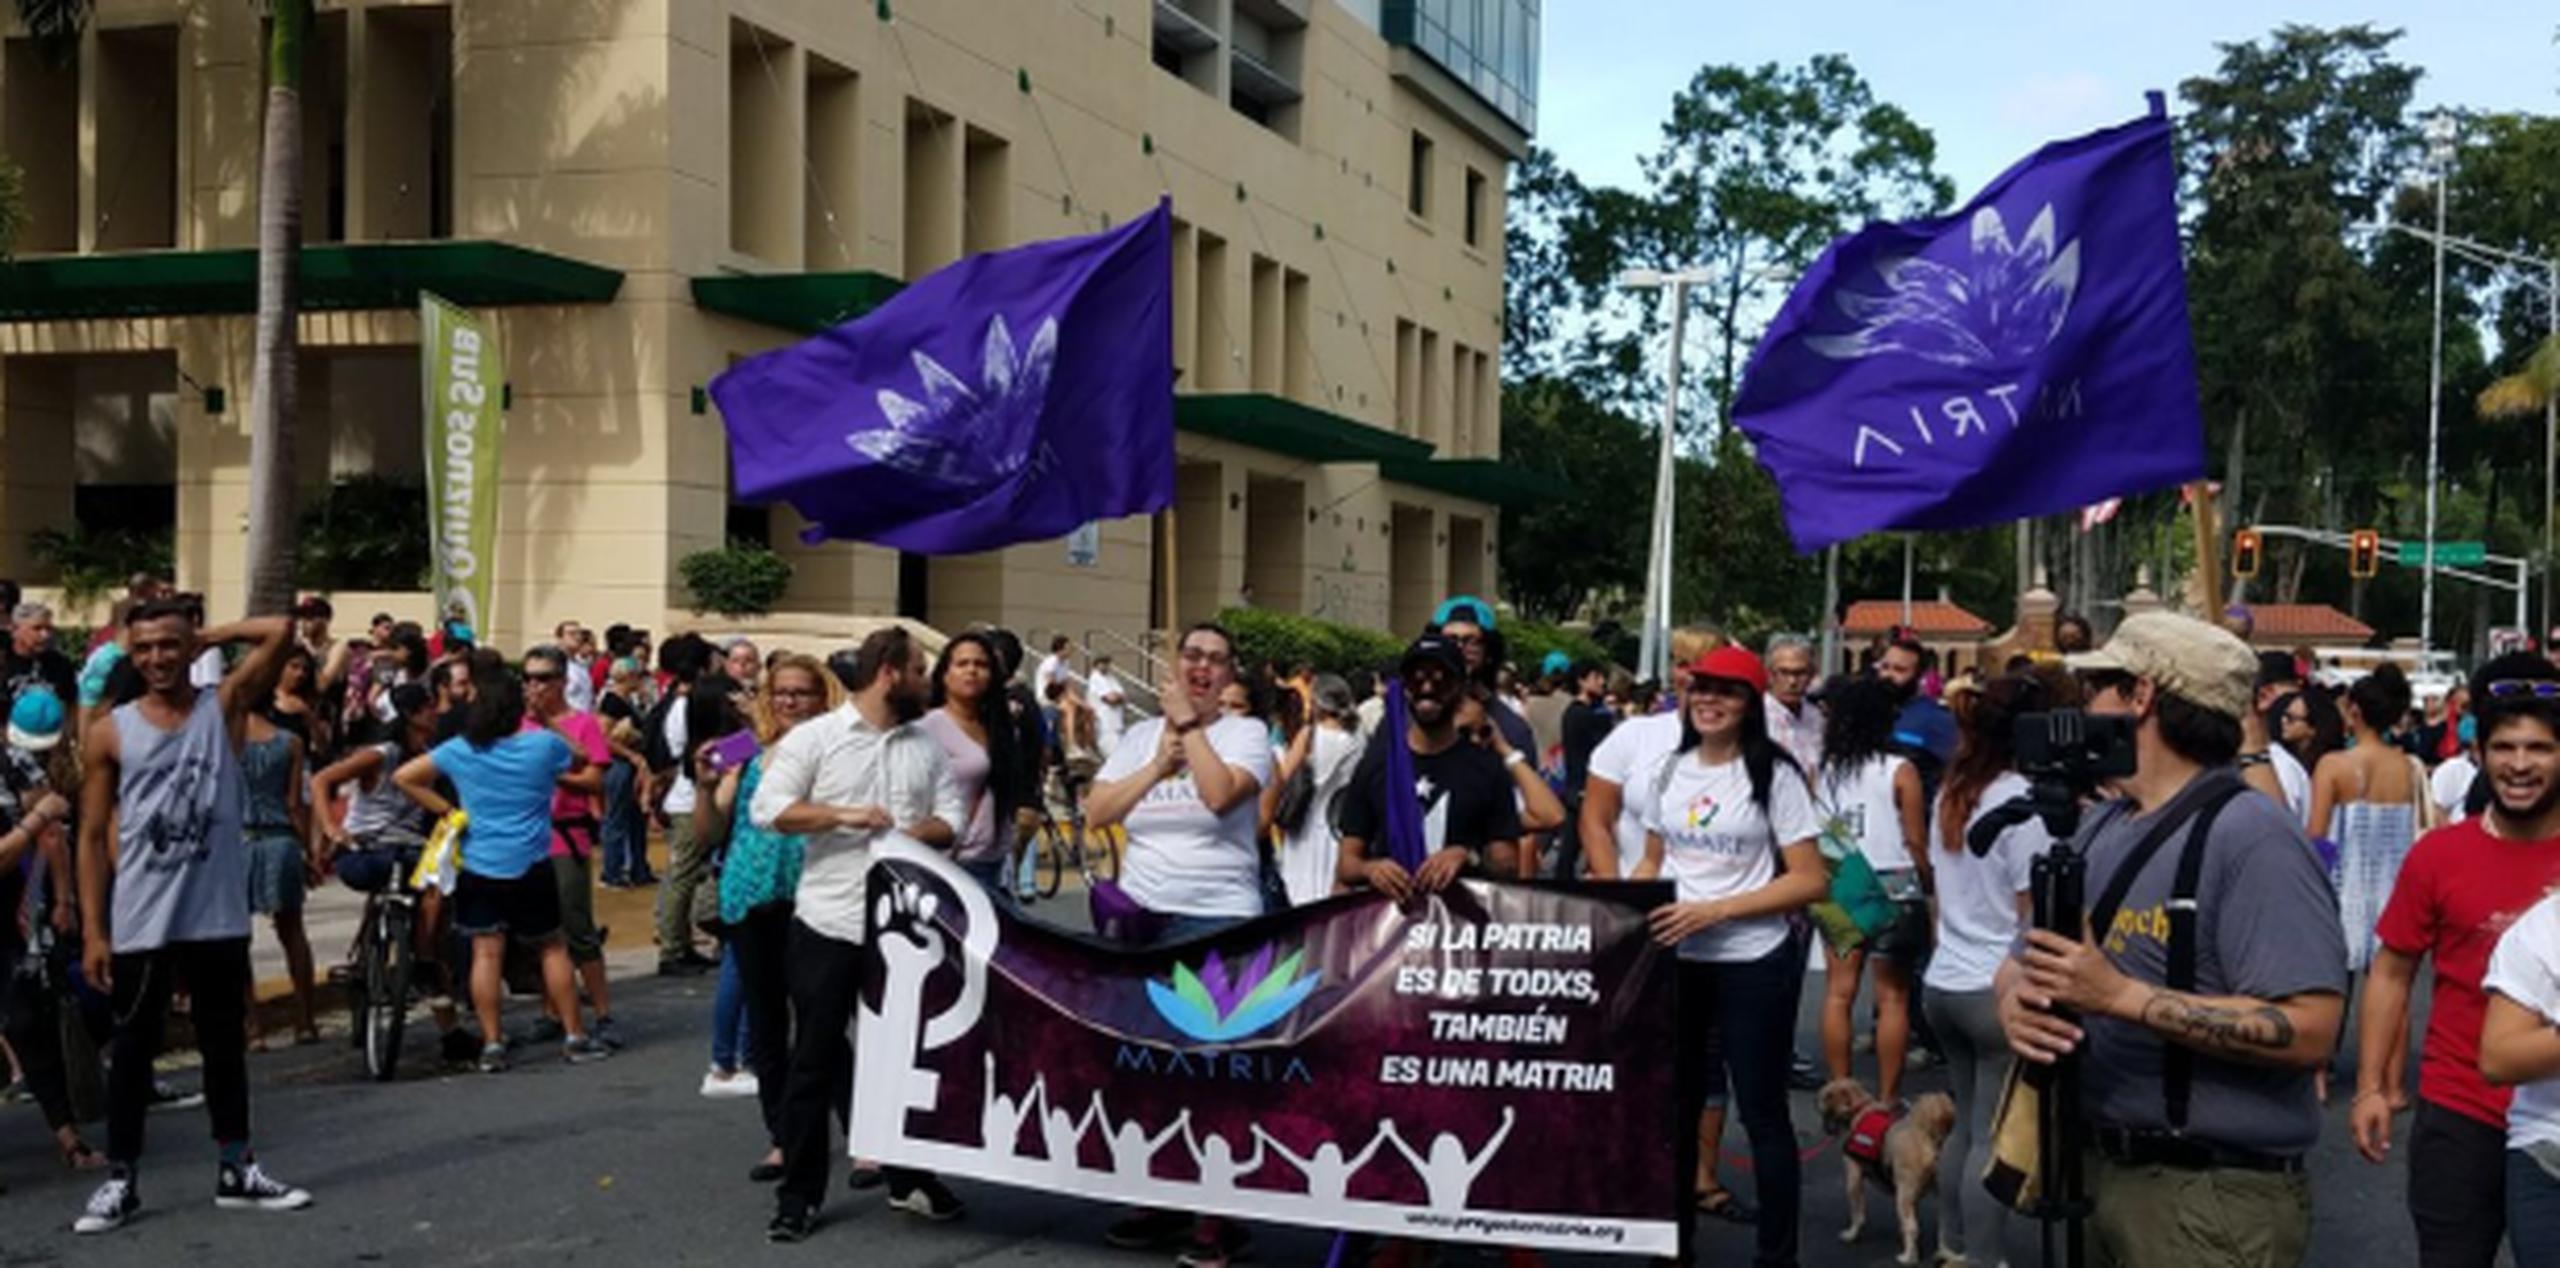 La marcha partió esta tarde de la avenida Universidad para llegar hasta la Plaza de la Convalecencia, en Río Piedras. (femmy.irrizary@gfrmedia.com)